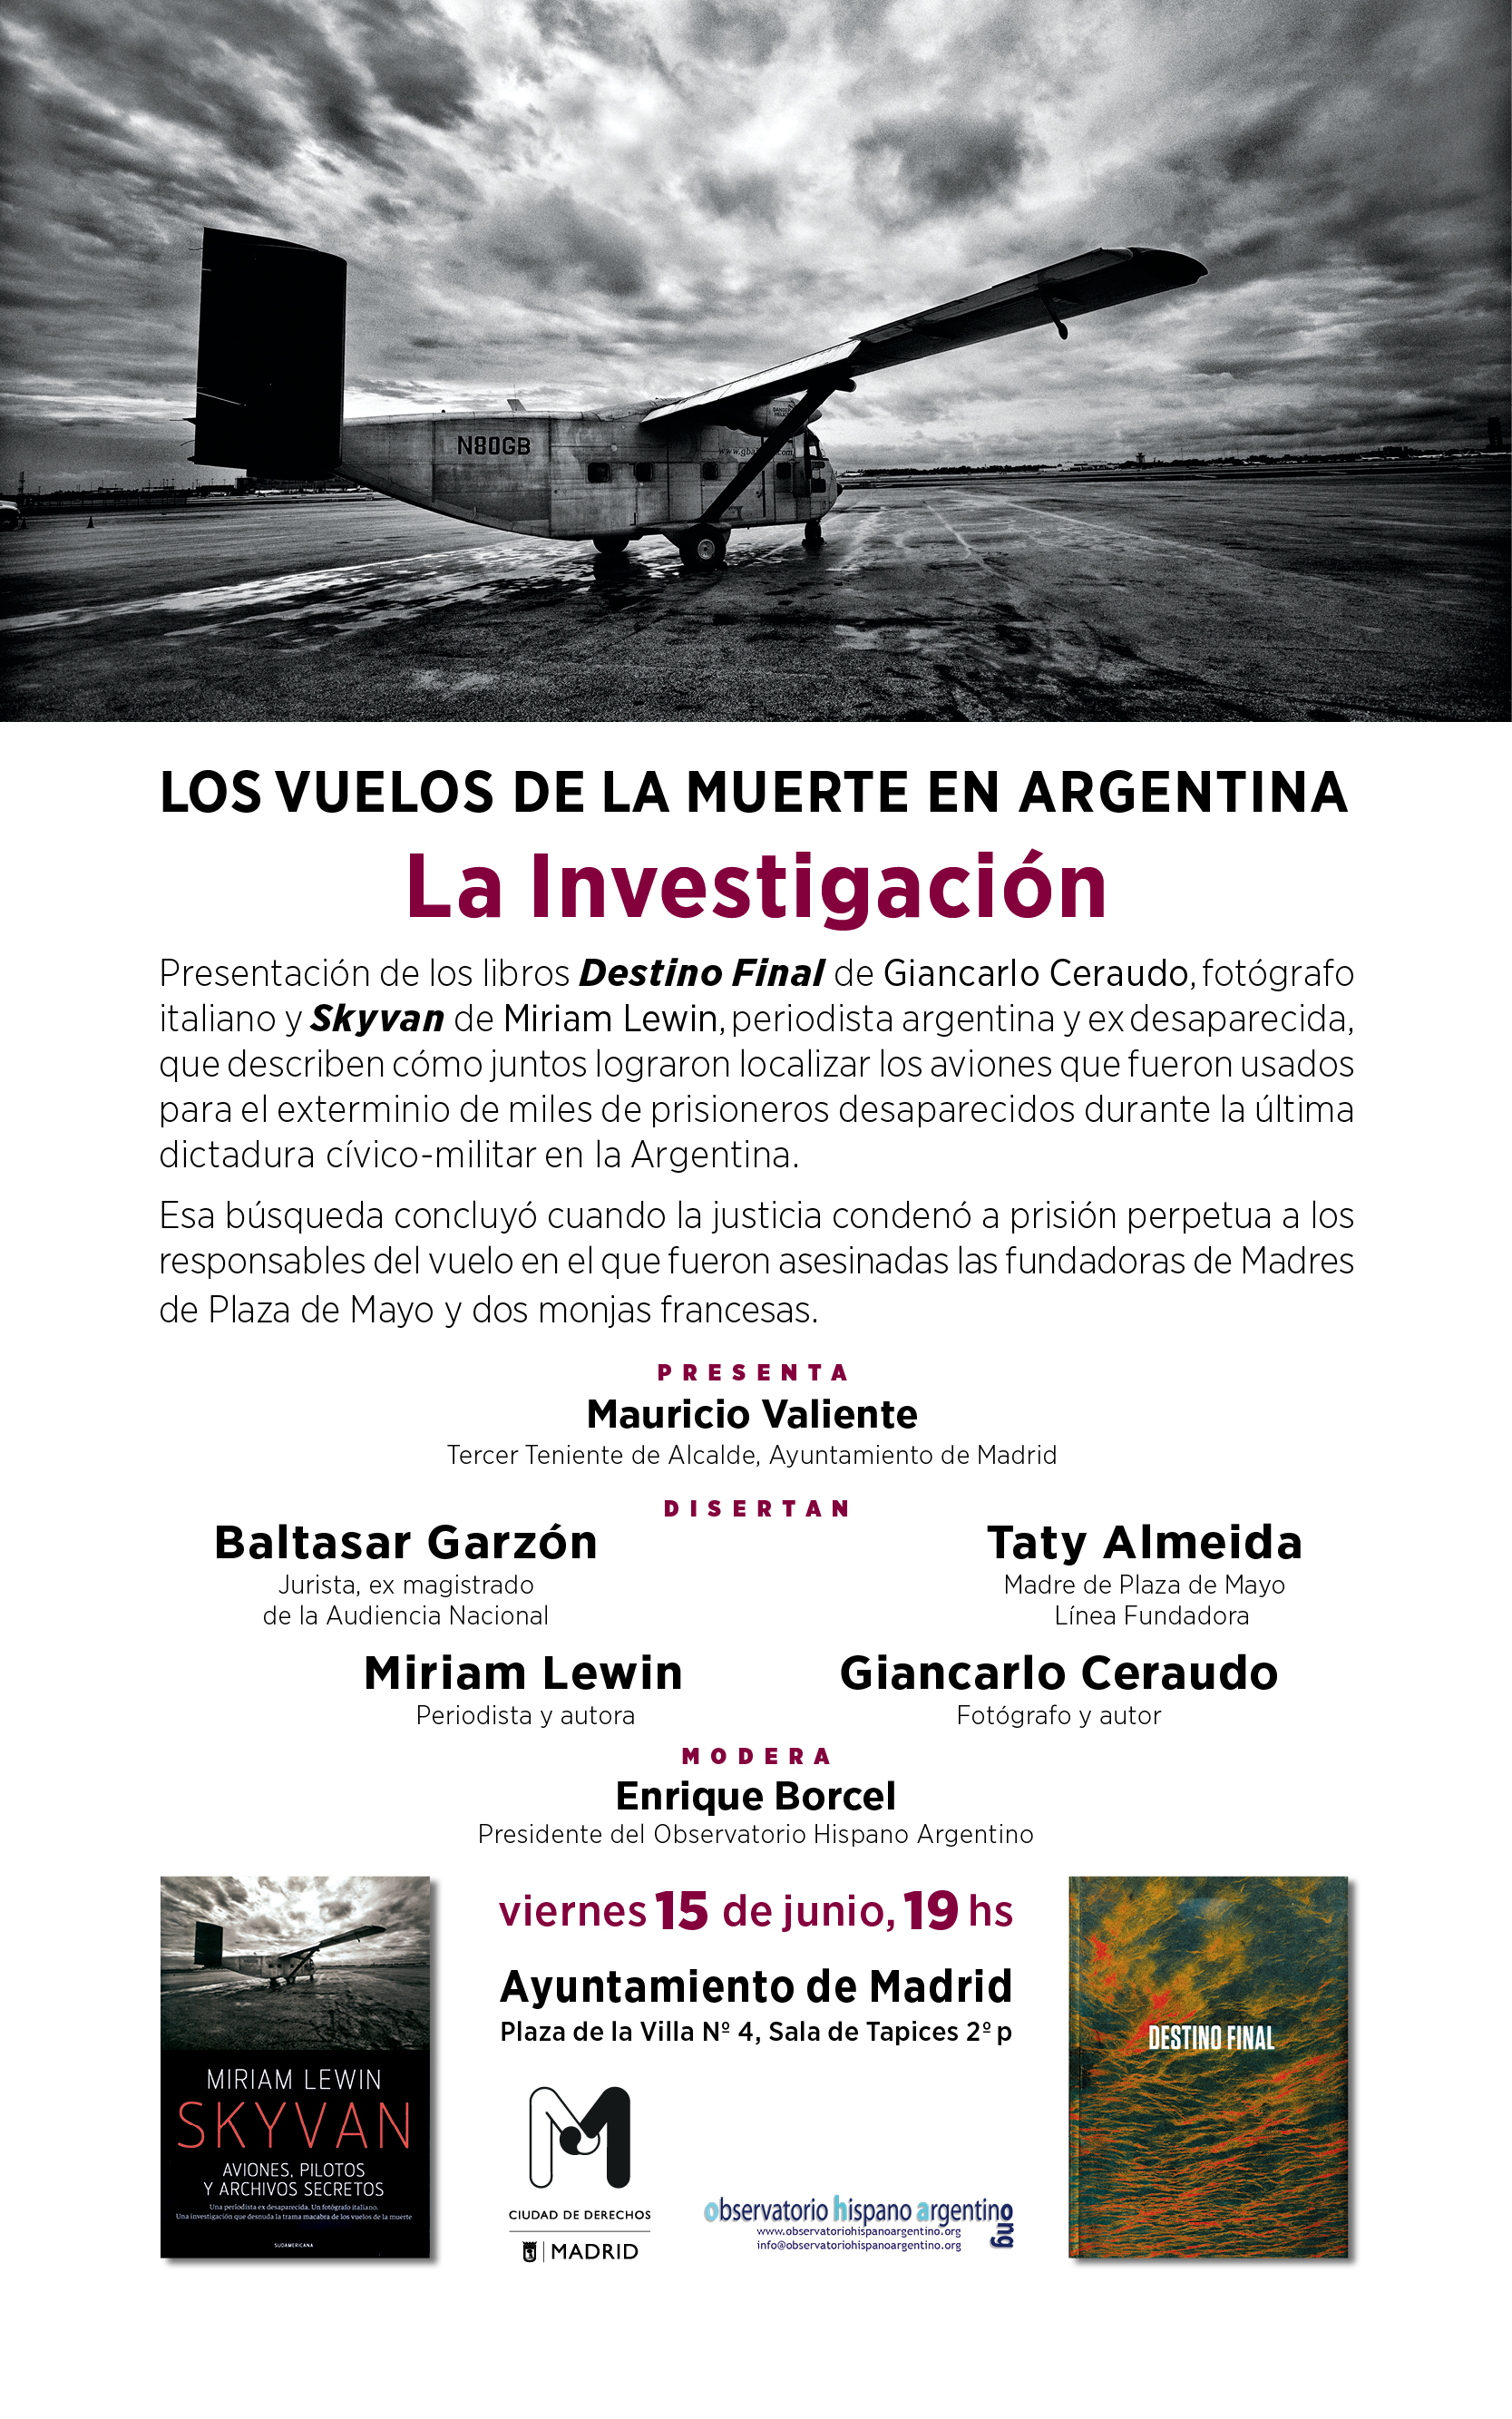 Presentación en Madrid 15-6-2018, el libro Los vuelos de la muerte en Argentina - La Investigación